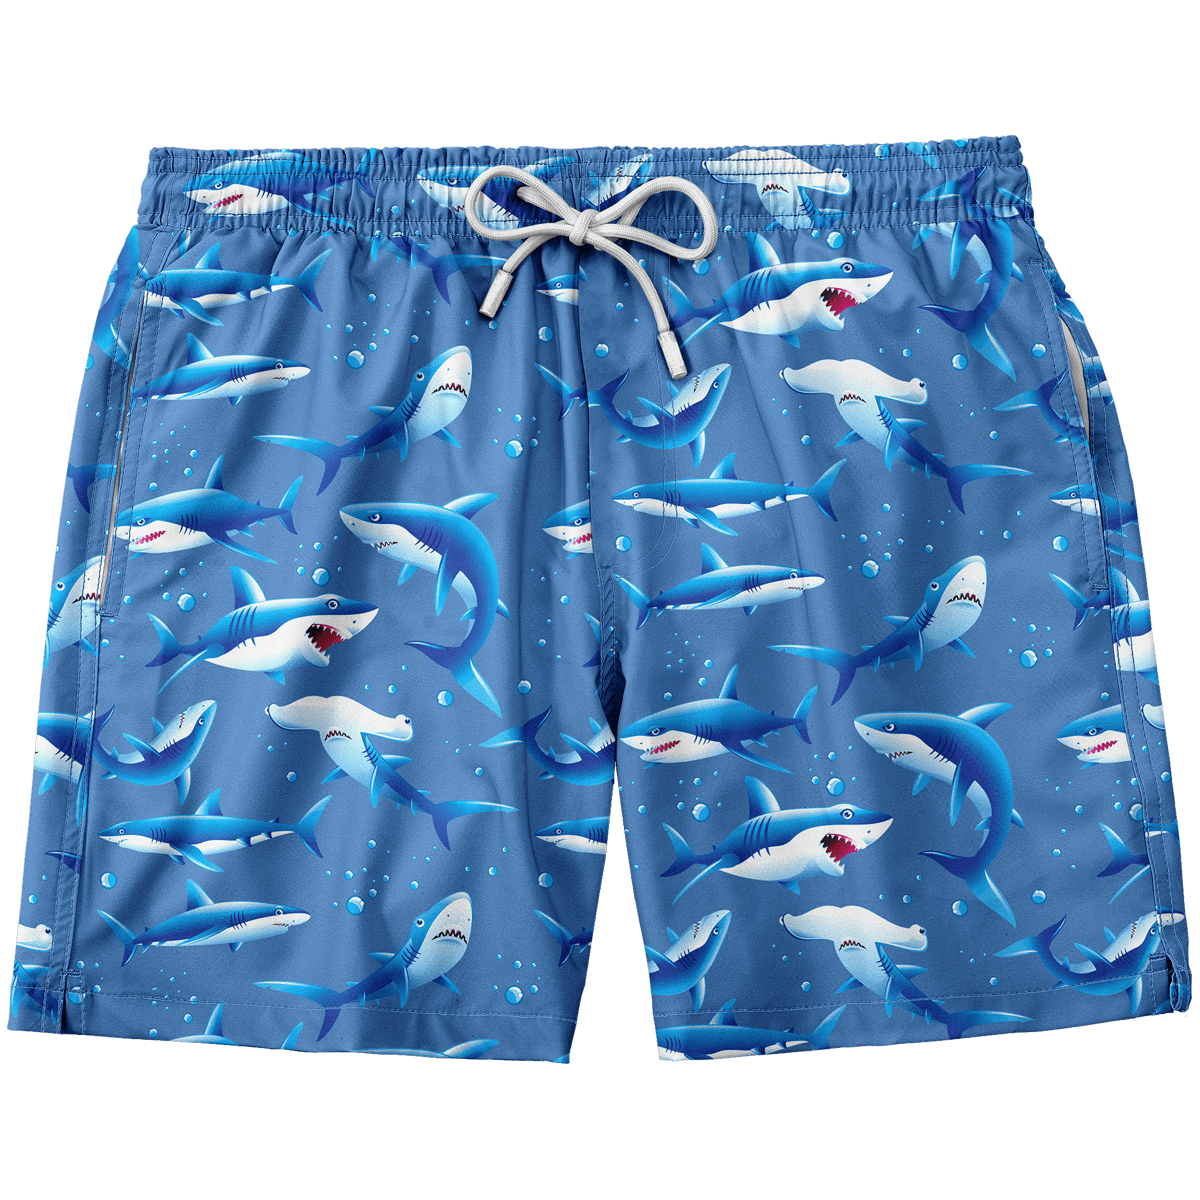 Sharks Swim Trunks – Greater Half